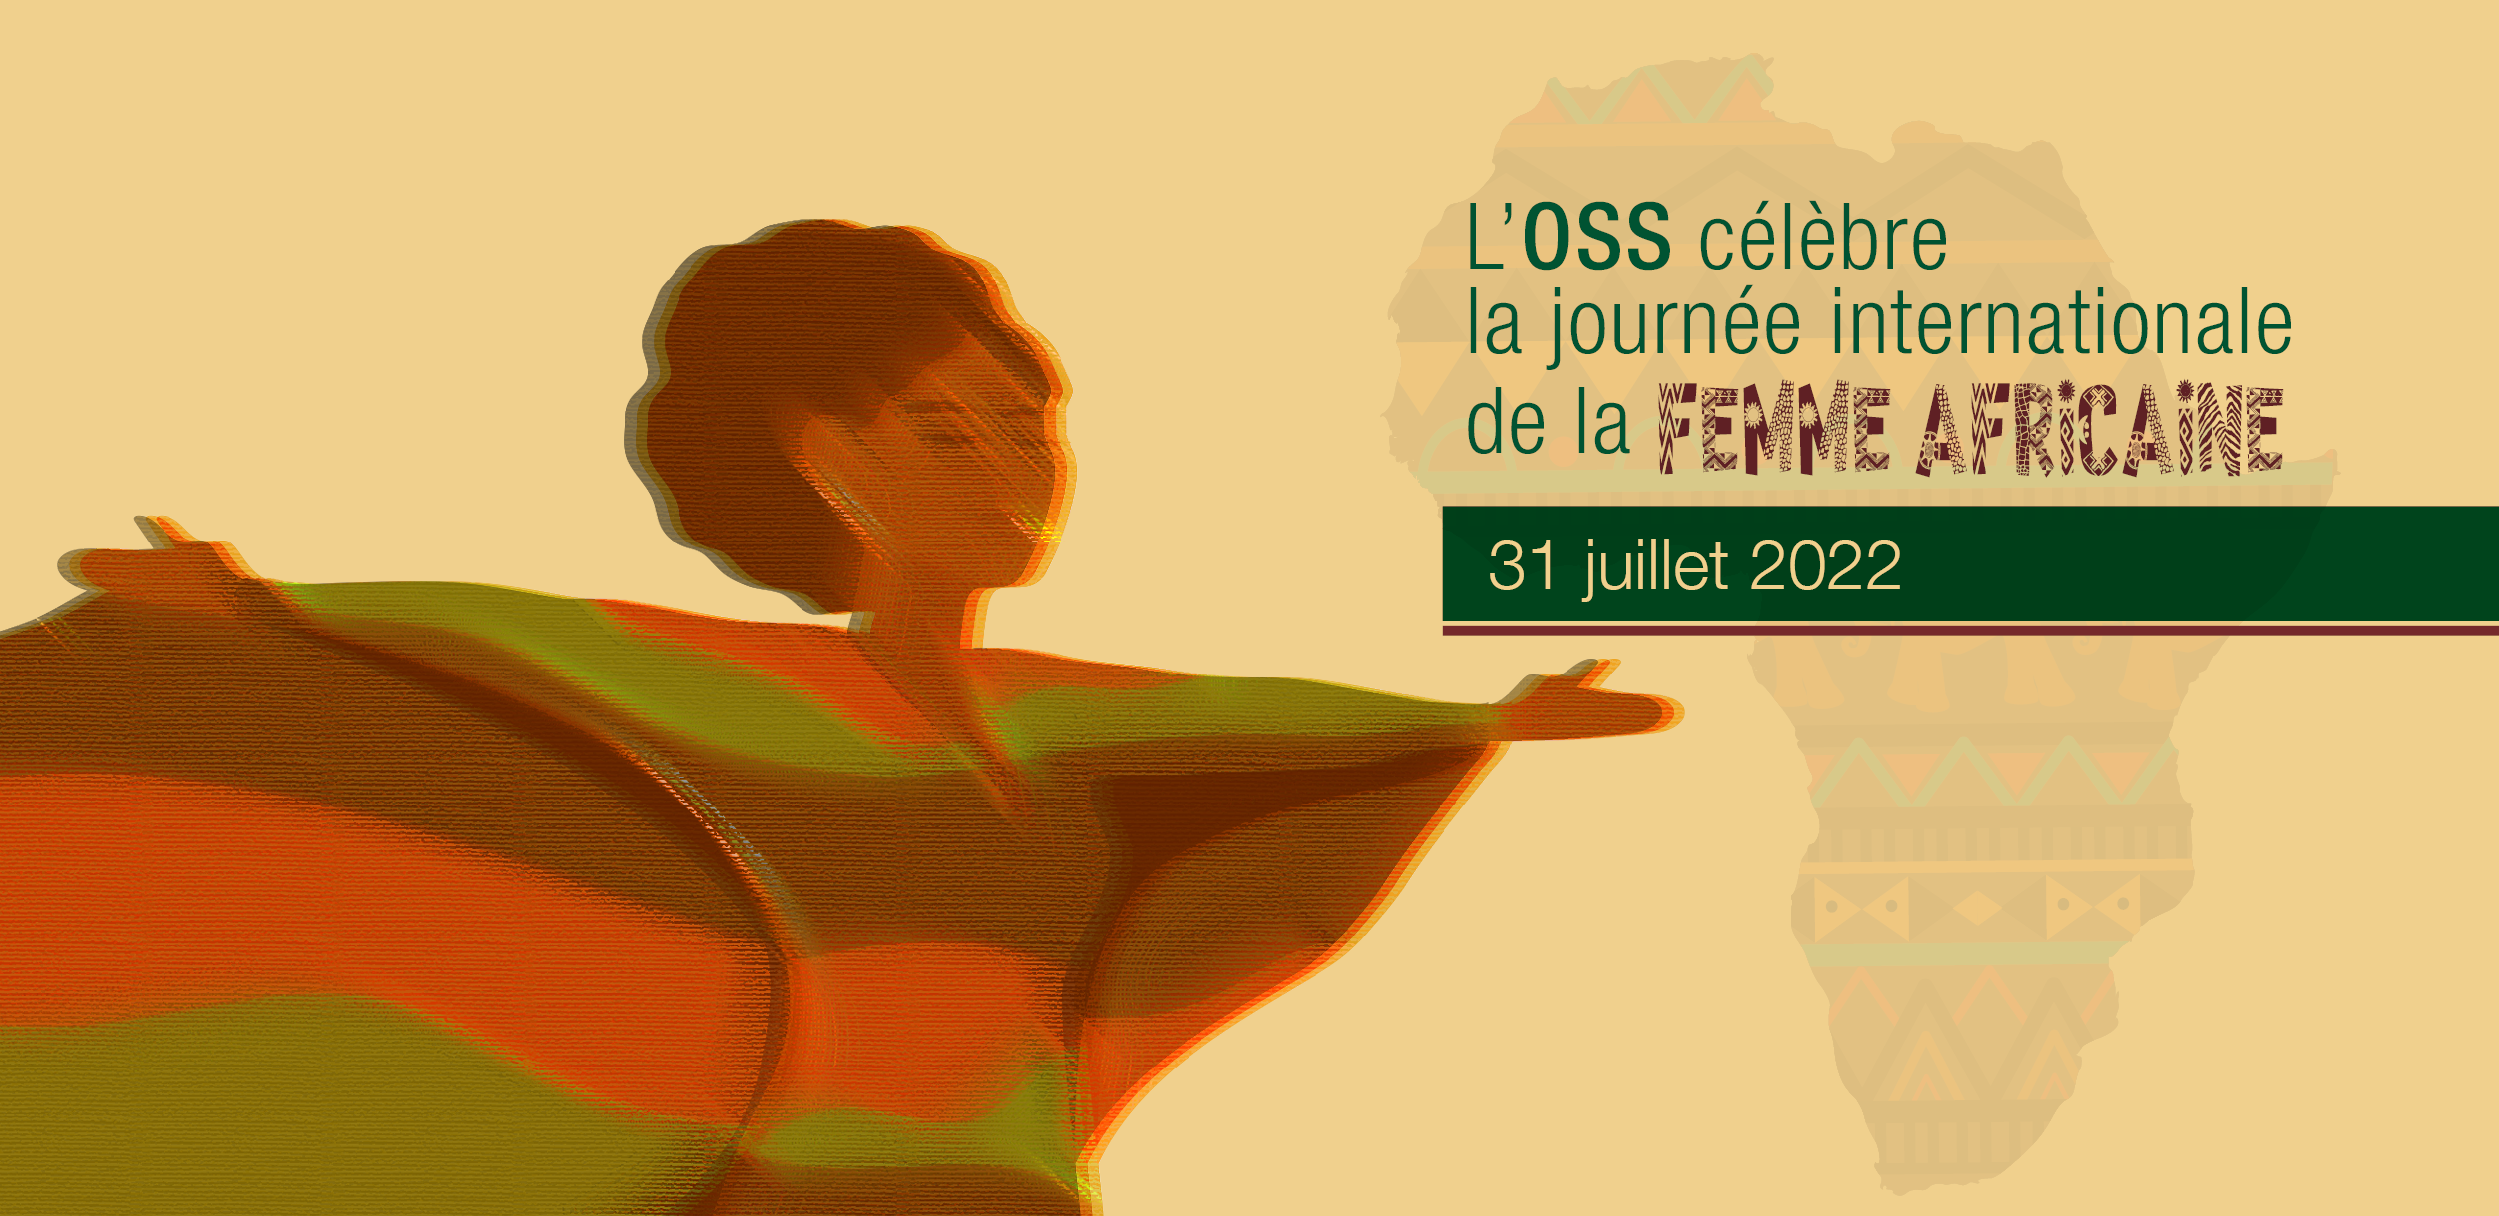 Journée internationale de la femme africaine, 31 juillet 2022Femme politique et militante malienne, Aoua Keïta***, est à l’origine de la journée internationale de la femme africaine, promulguée par l'ONU et l'OUA le 31 juillet 1962